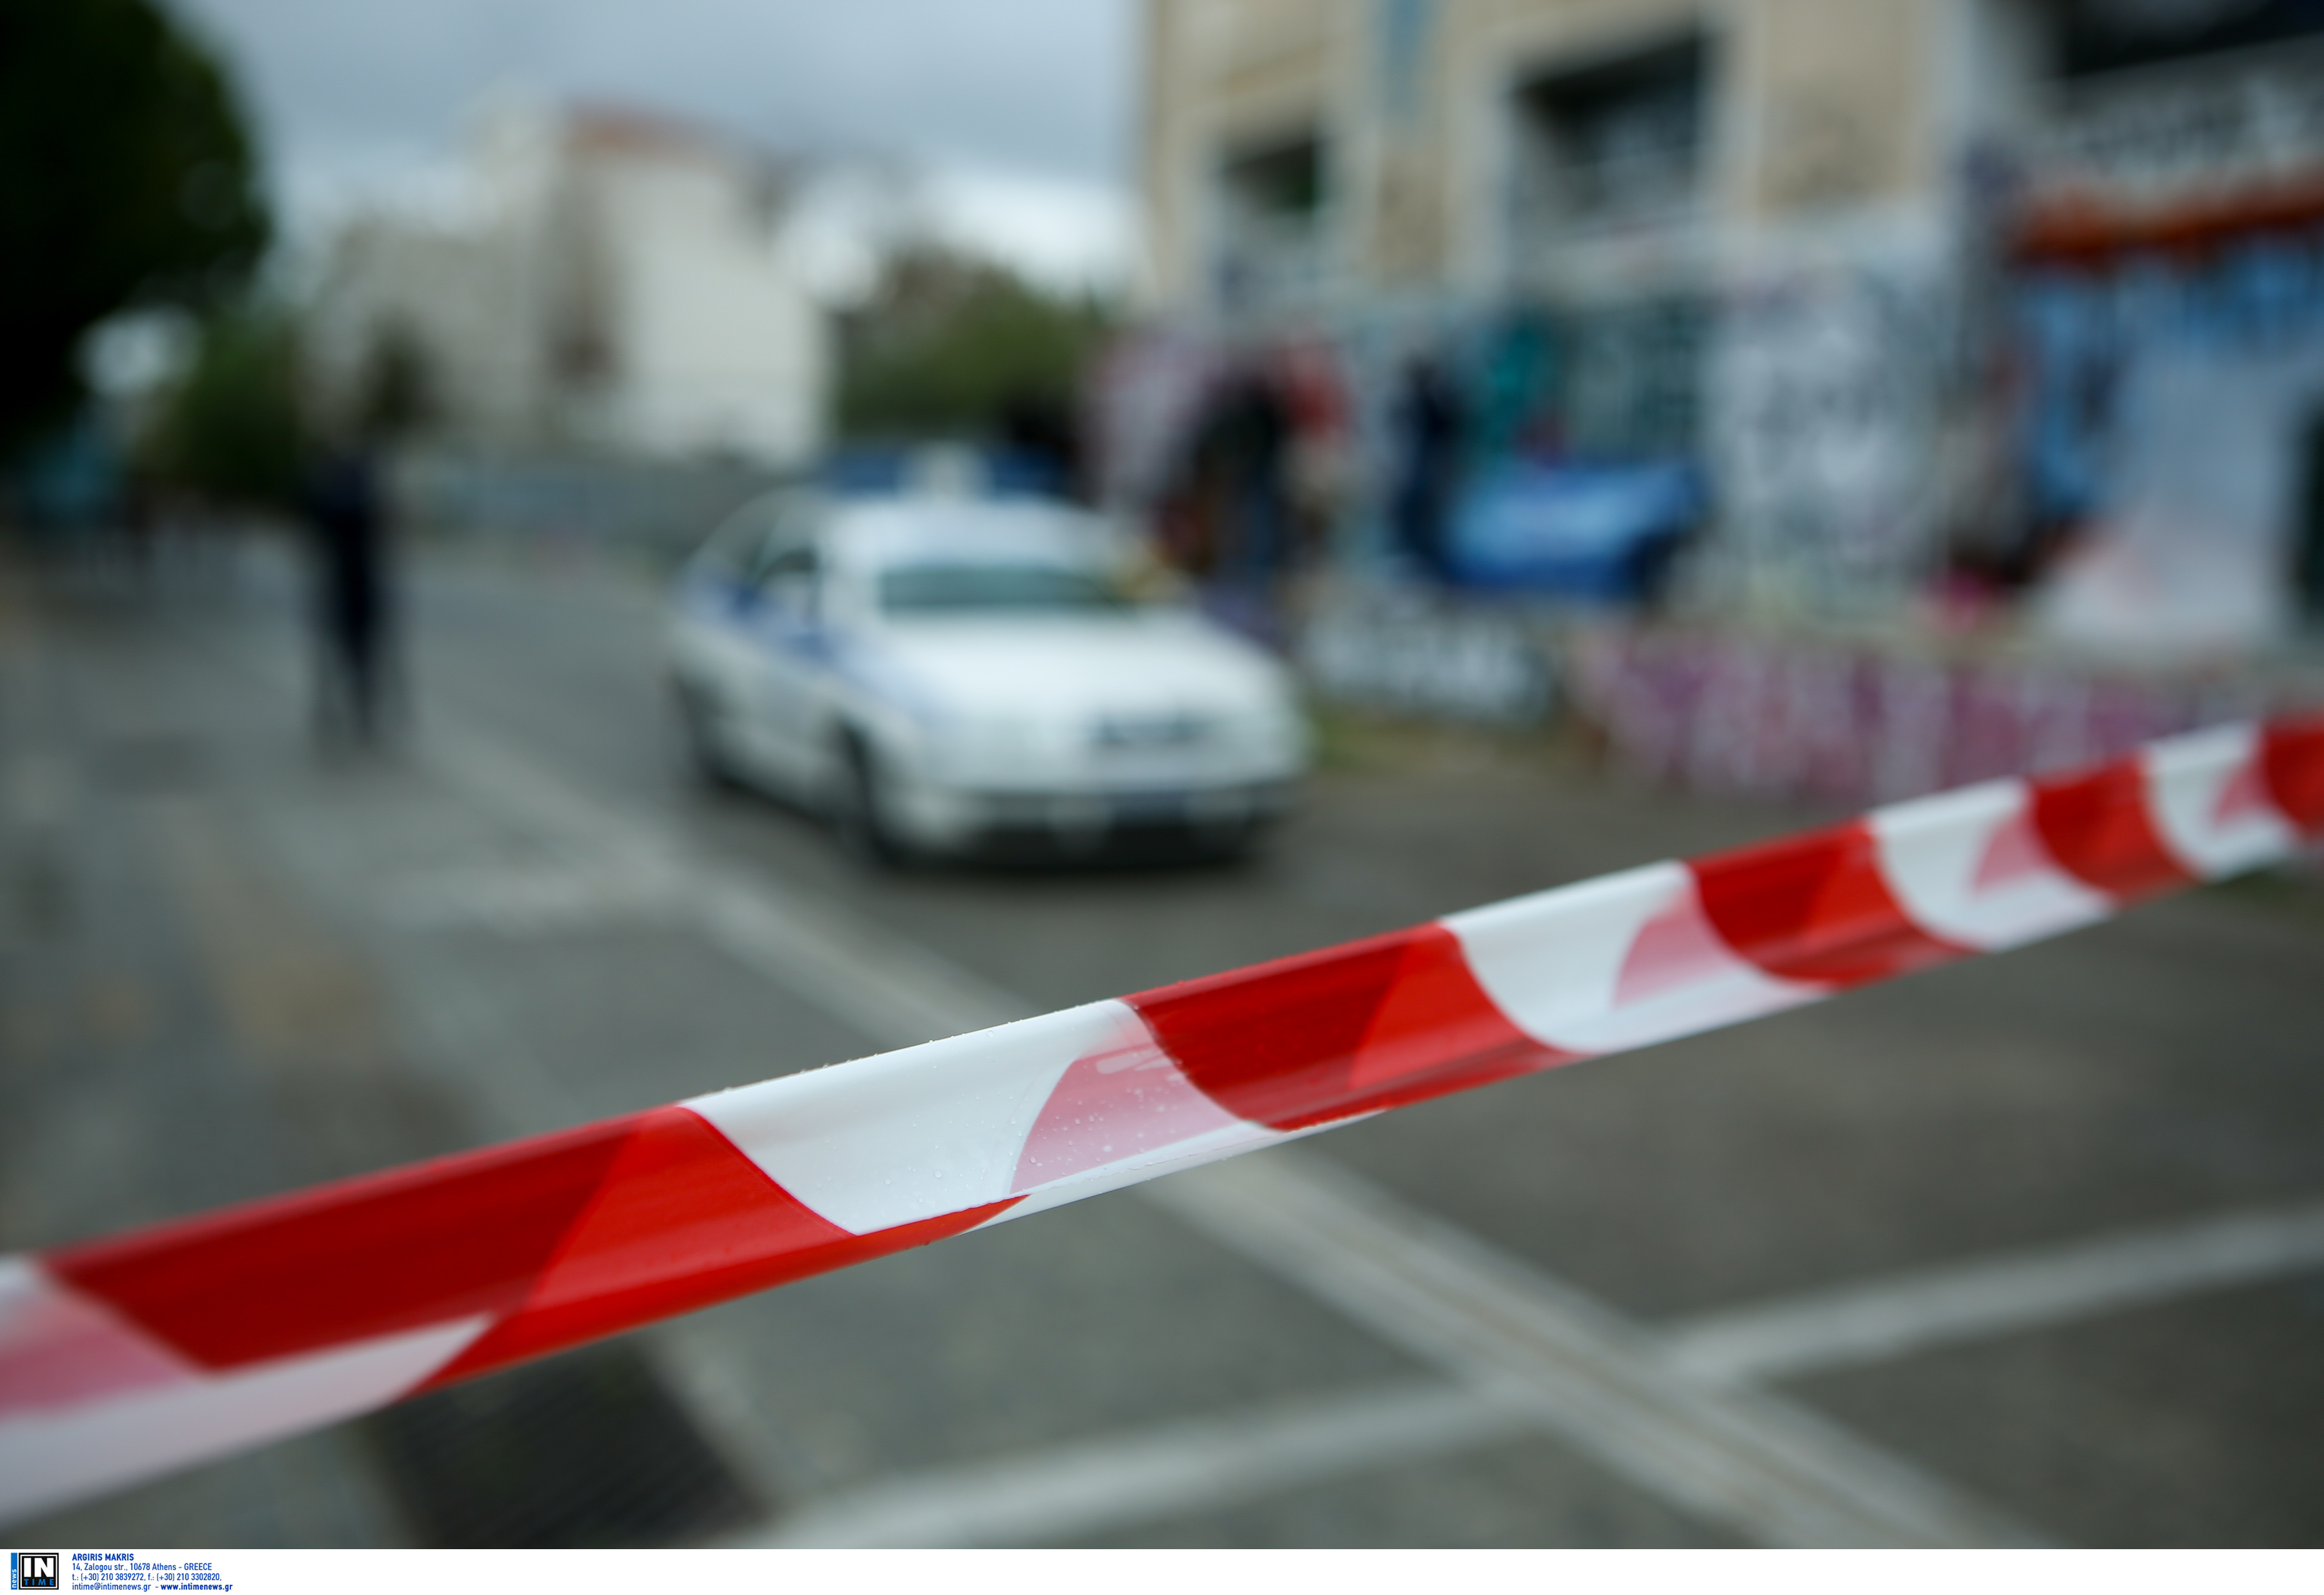 Κρήτη: Εγκληματική ομάδα 18 ατόμων πίσω από 77 κλοπές και διαρρήξεις – Στο στόχαστρο σπίτια και επιχειρήσεις!